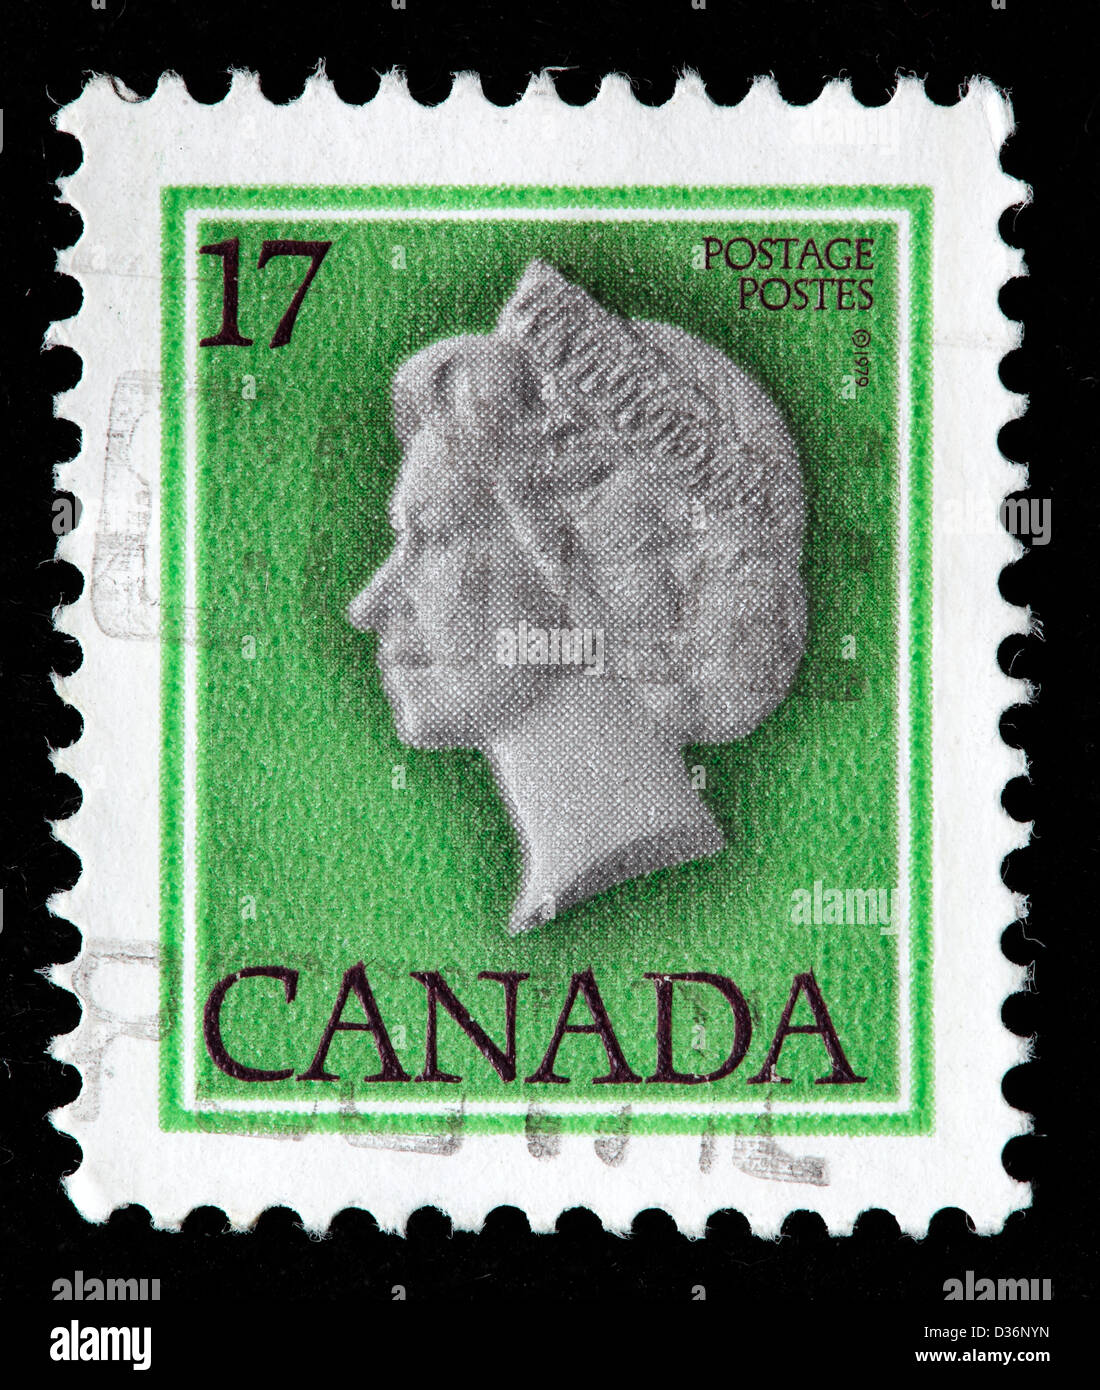 Queen Elizabeth II, postage stamp, Canada, 1977 Stock Photo